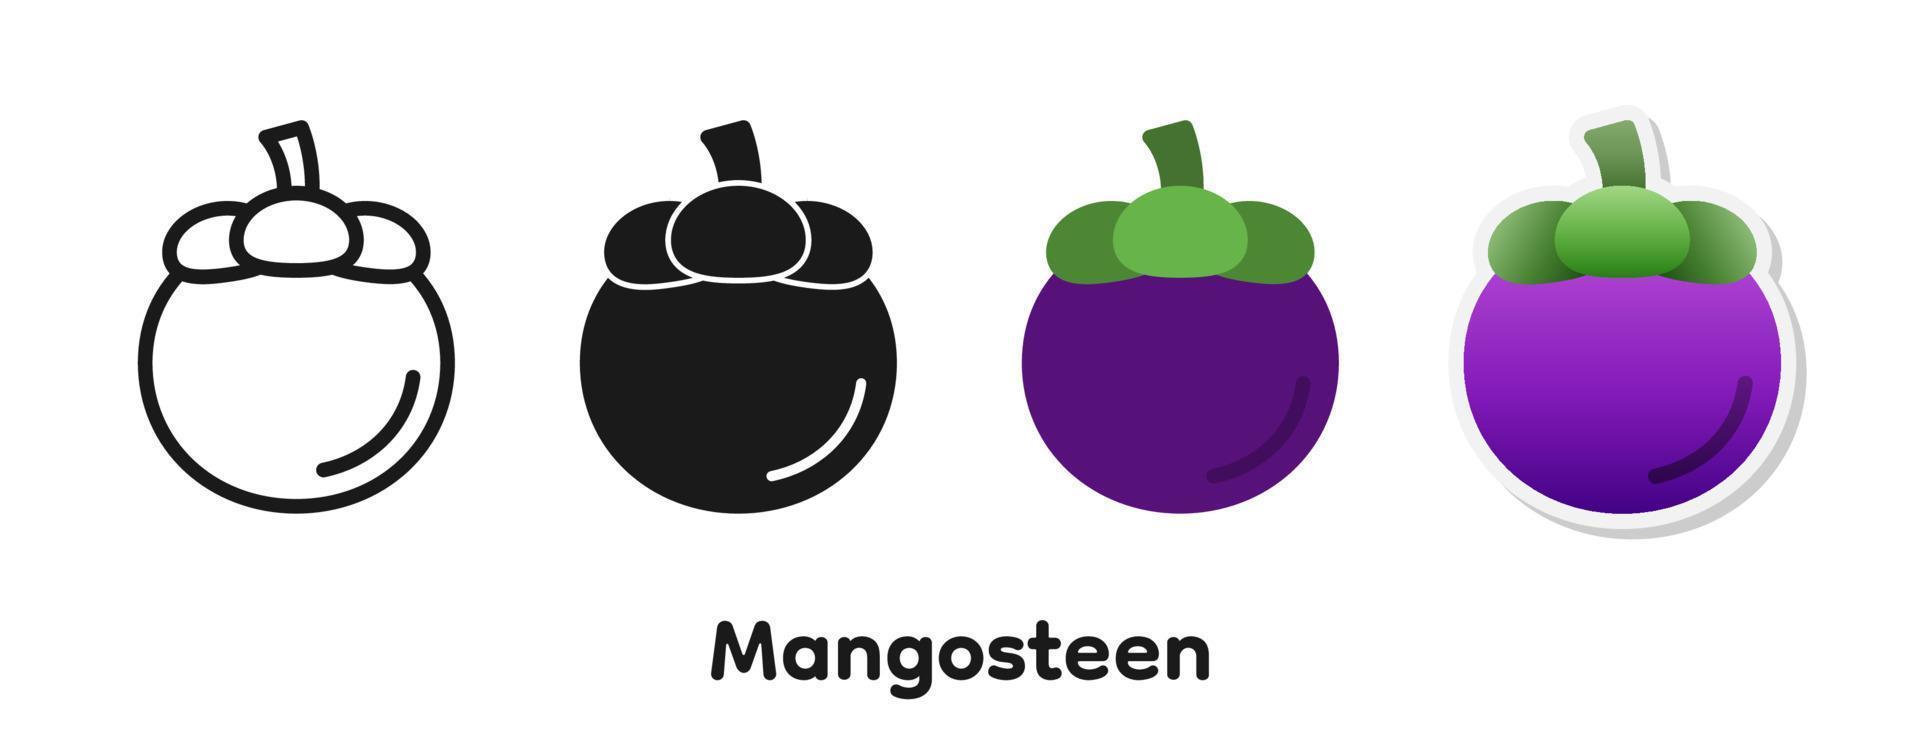 vector icon set van de mangosteen.